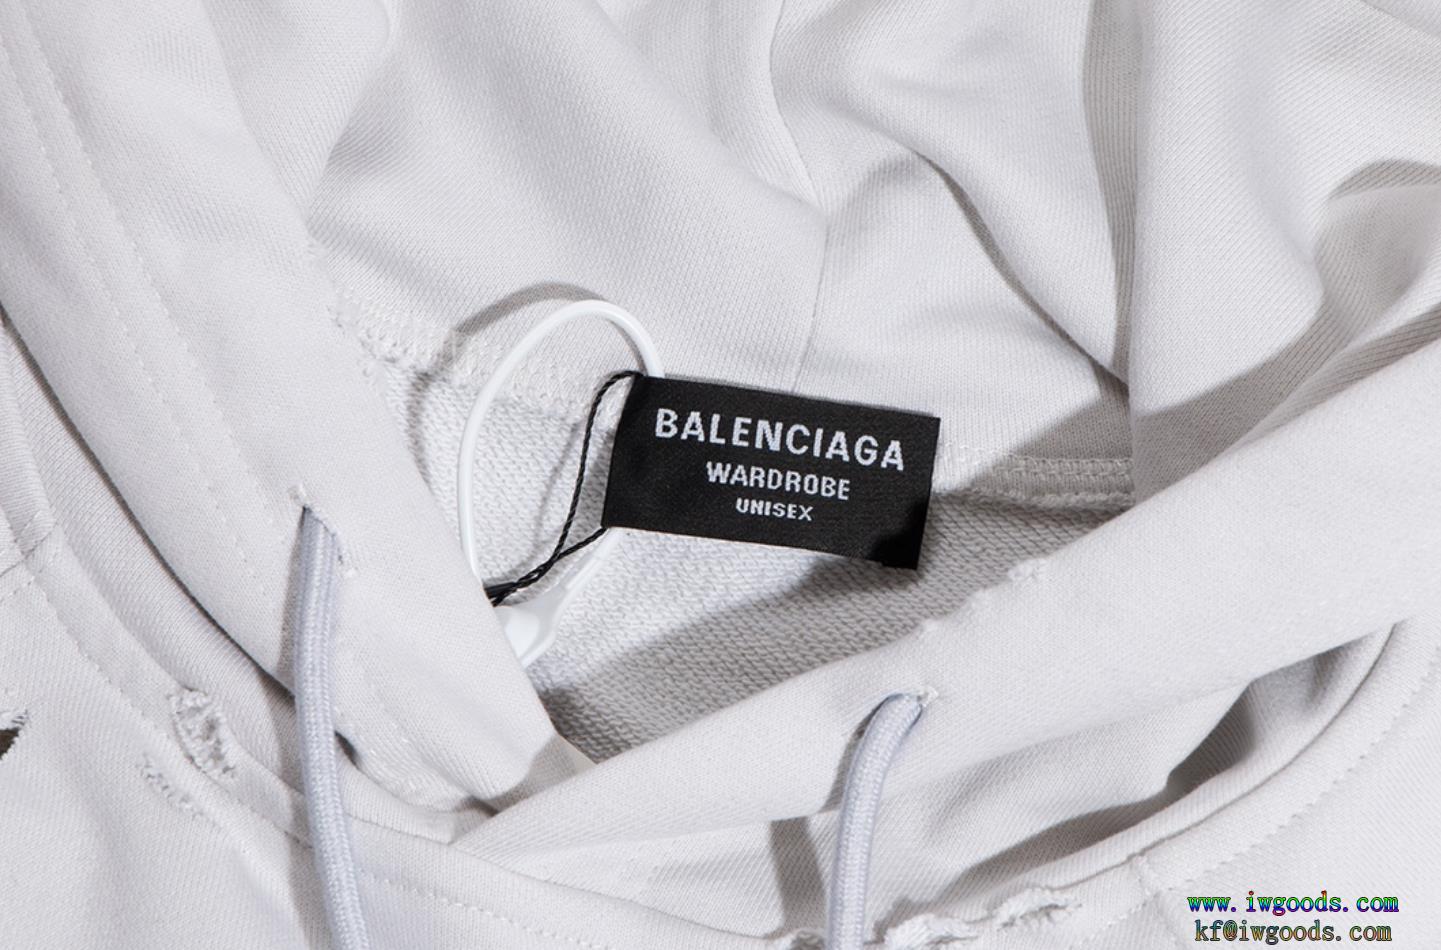 BALENCIAGAパーカーコピー 品 ブランド清潔感の高い新品今年コレクション新作登場！